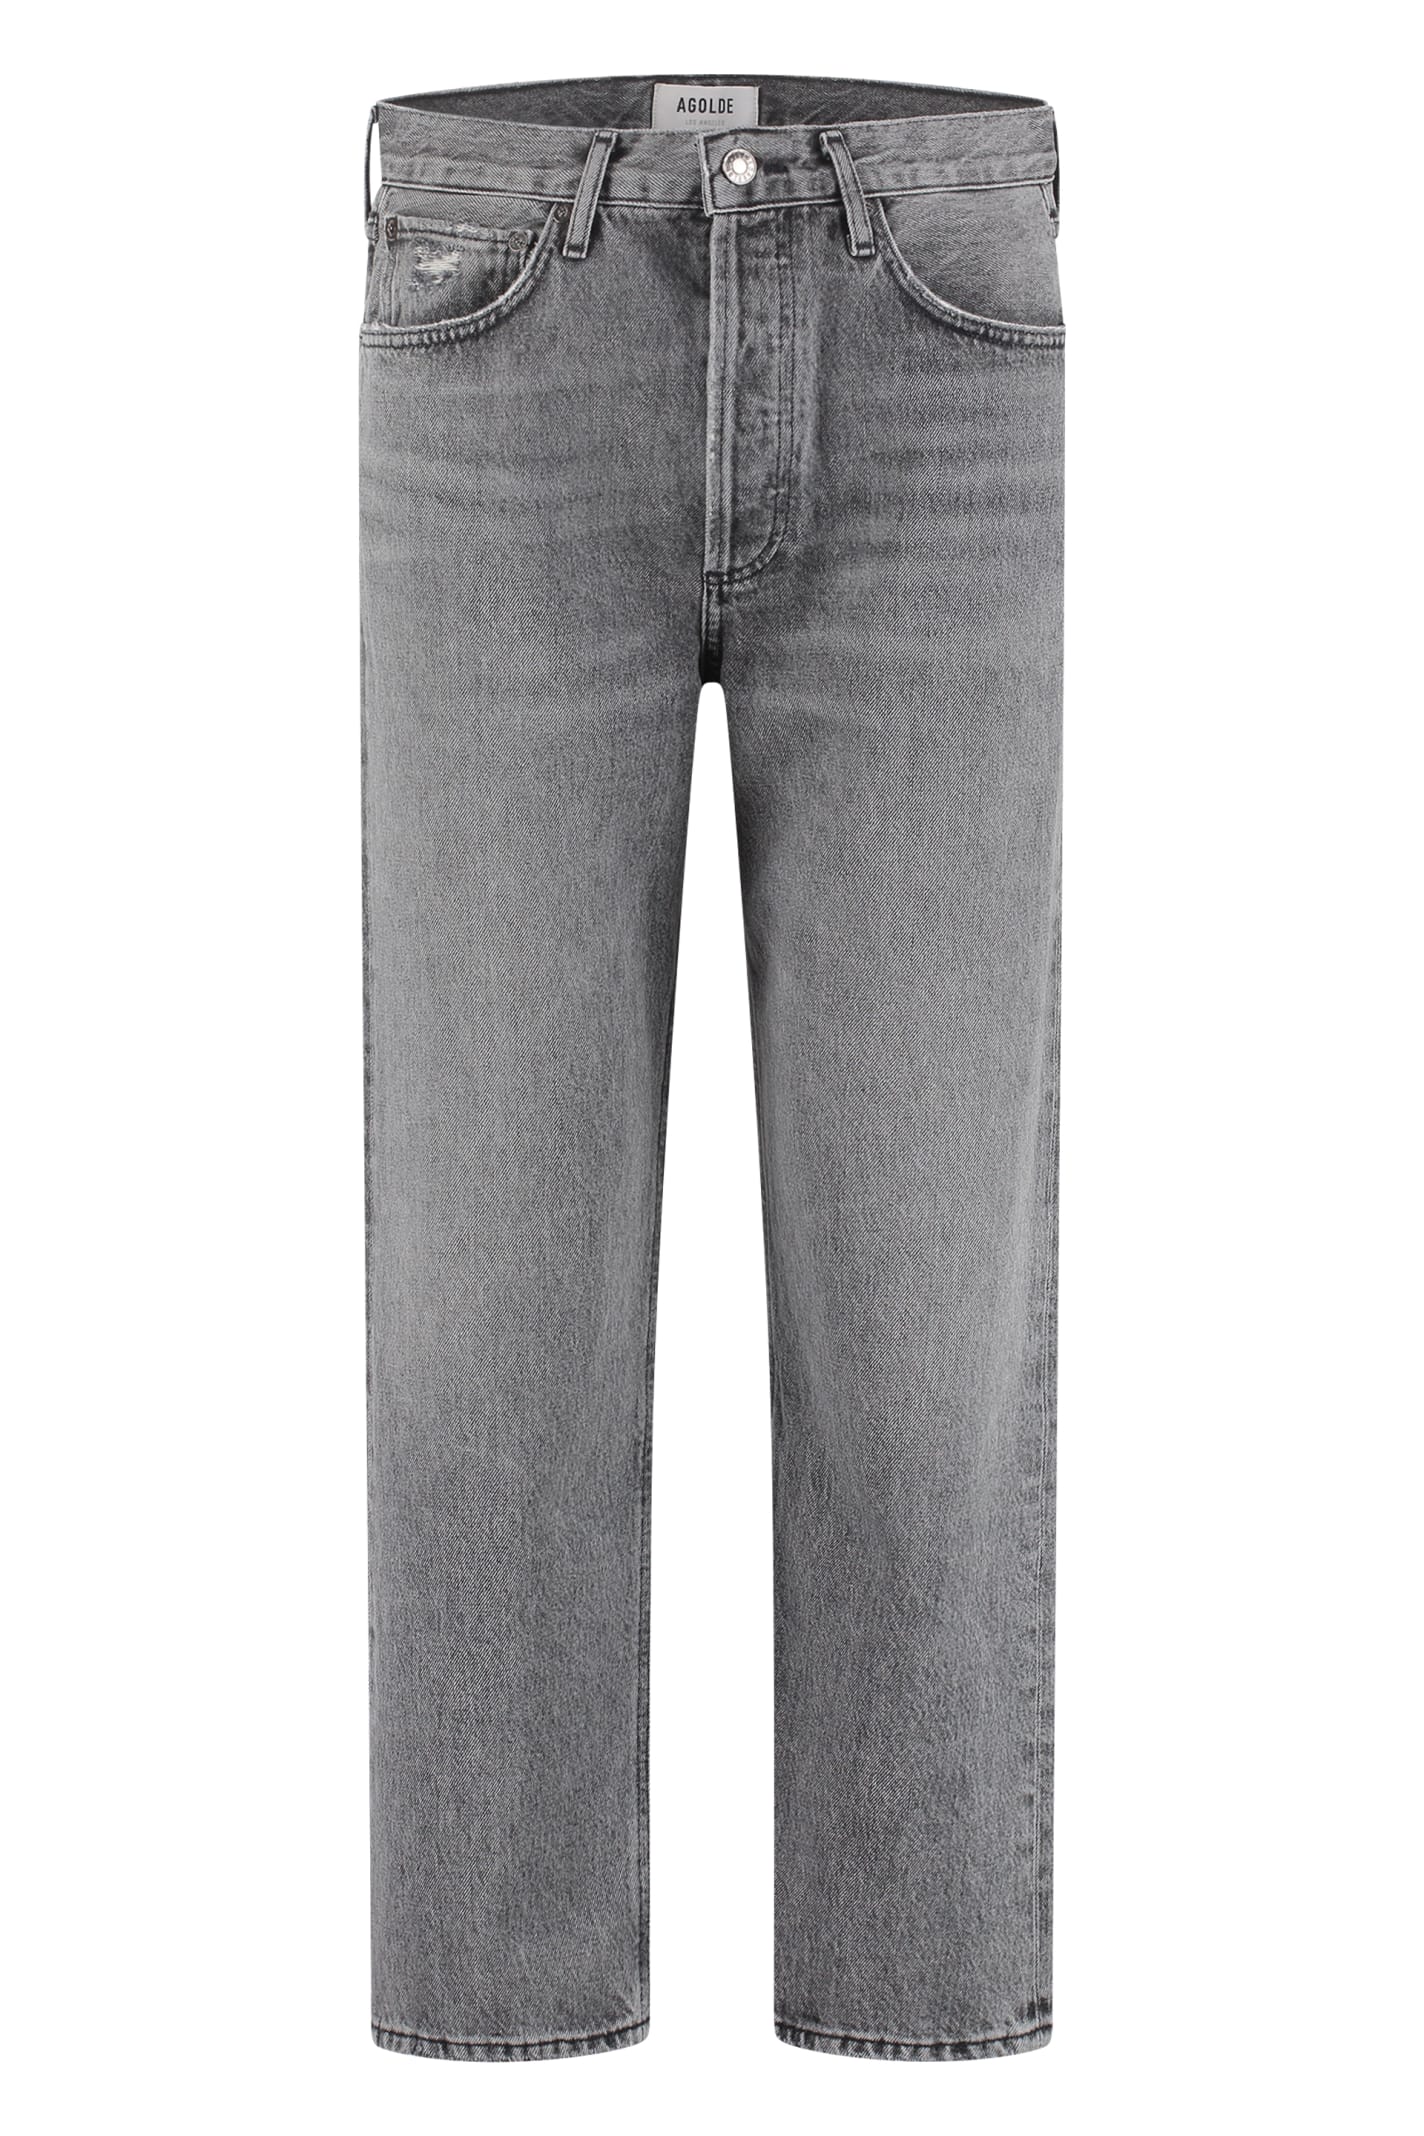 AGOLDE 90s 5-pocket Jeans